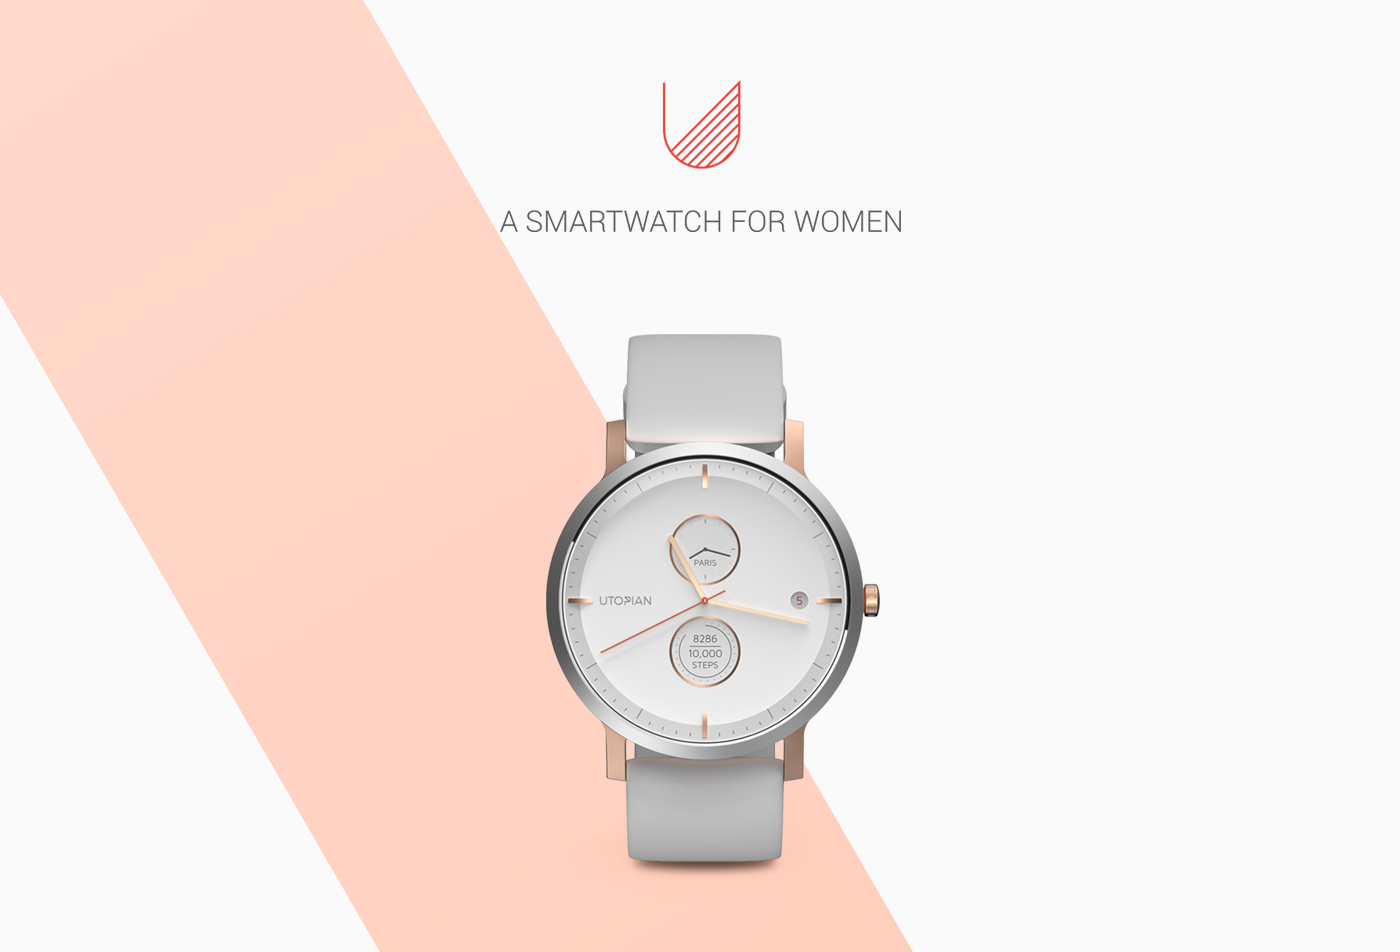 smartwatch watch women jewelry accessories Wearable